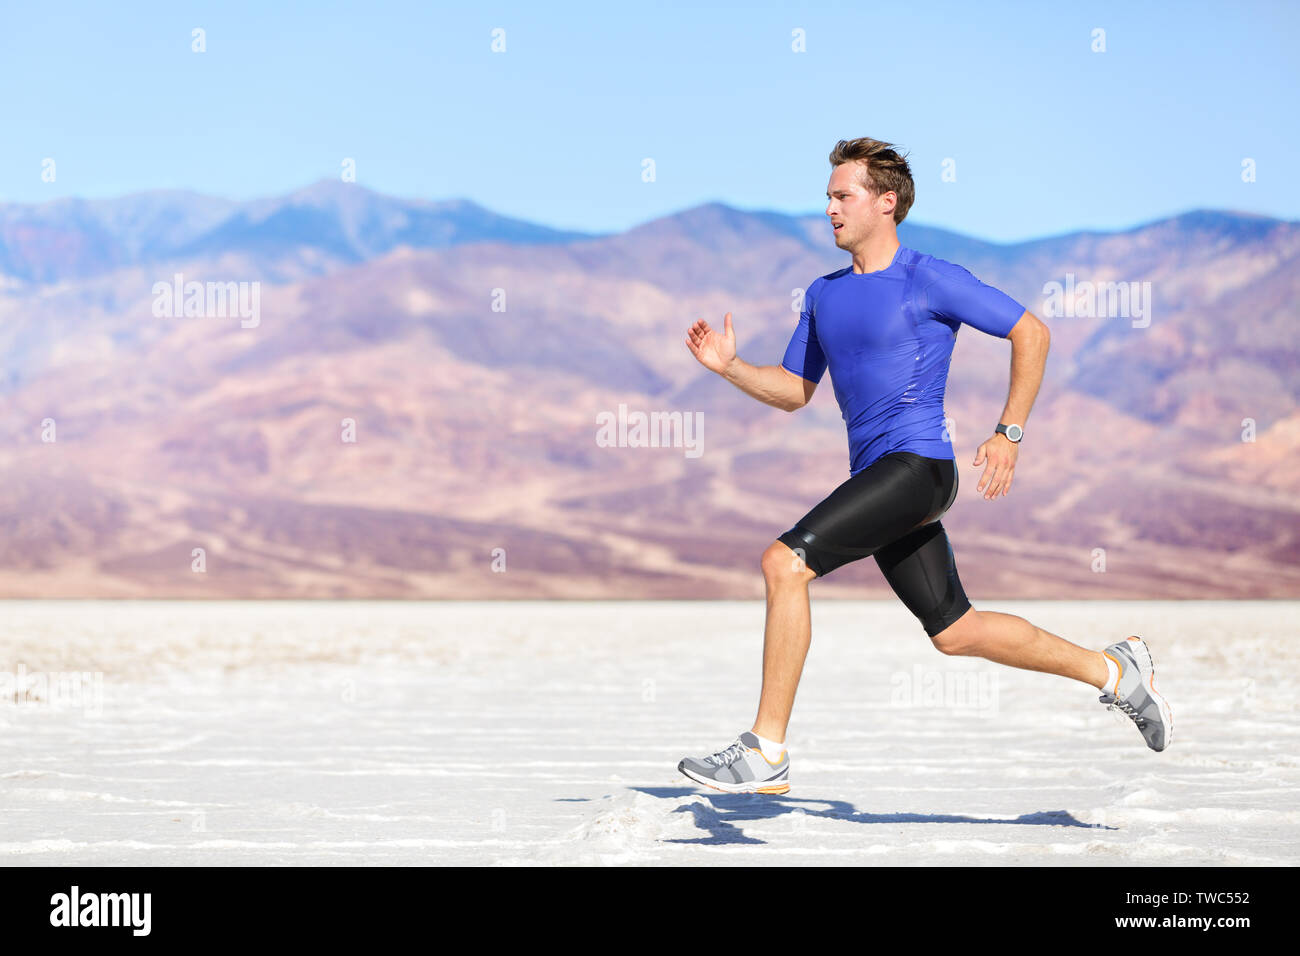 Mann outdoor sprinten Laufen für Erfolg. Männliche fitness Runner sport Athleten im Sprint mit großer Geschwindigkeit in der schönen Landschaft in der Wüste. Stockfoto